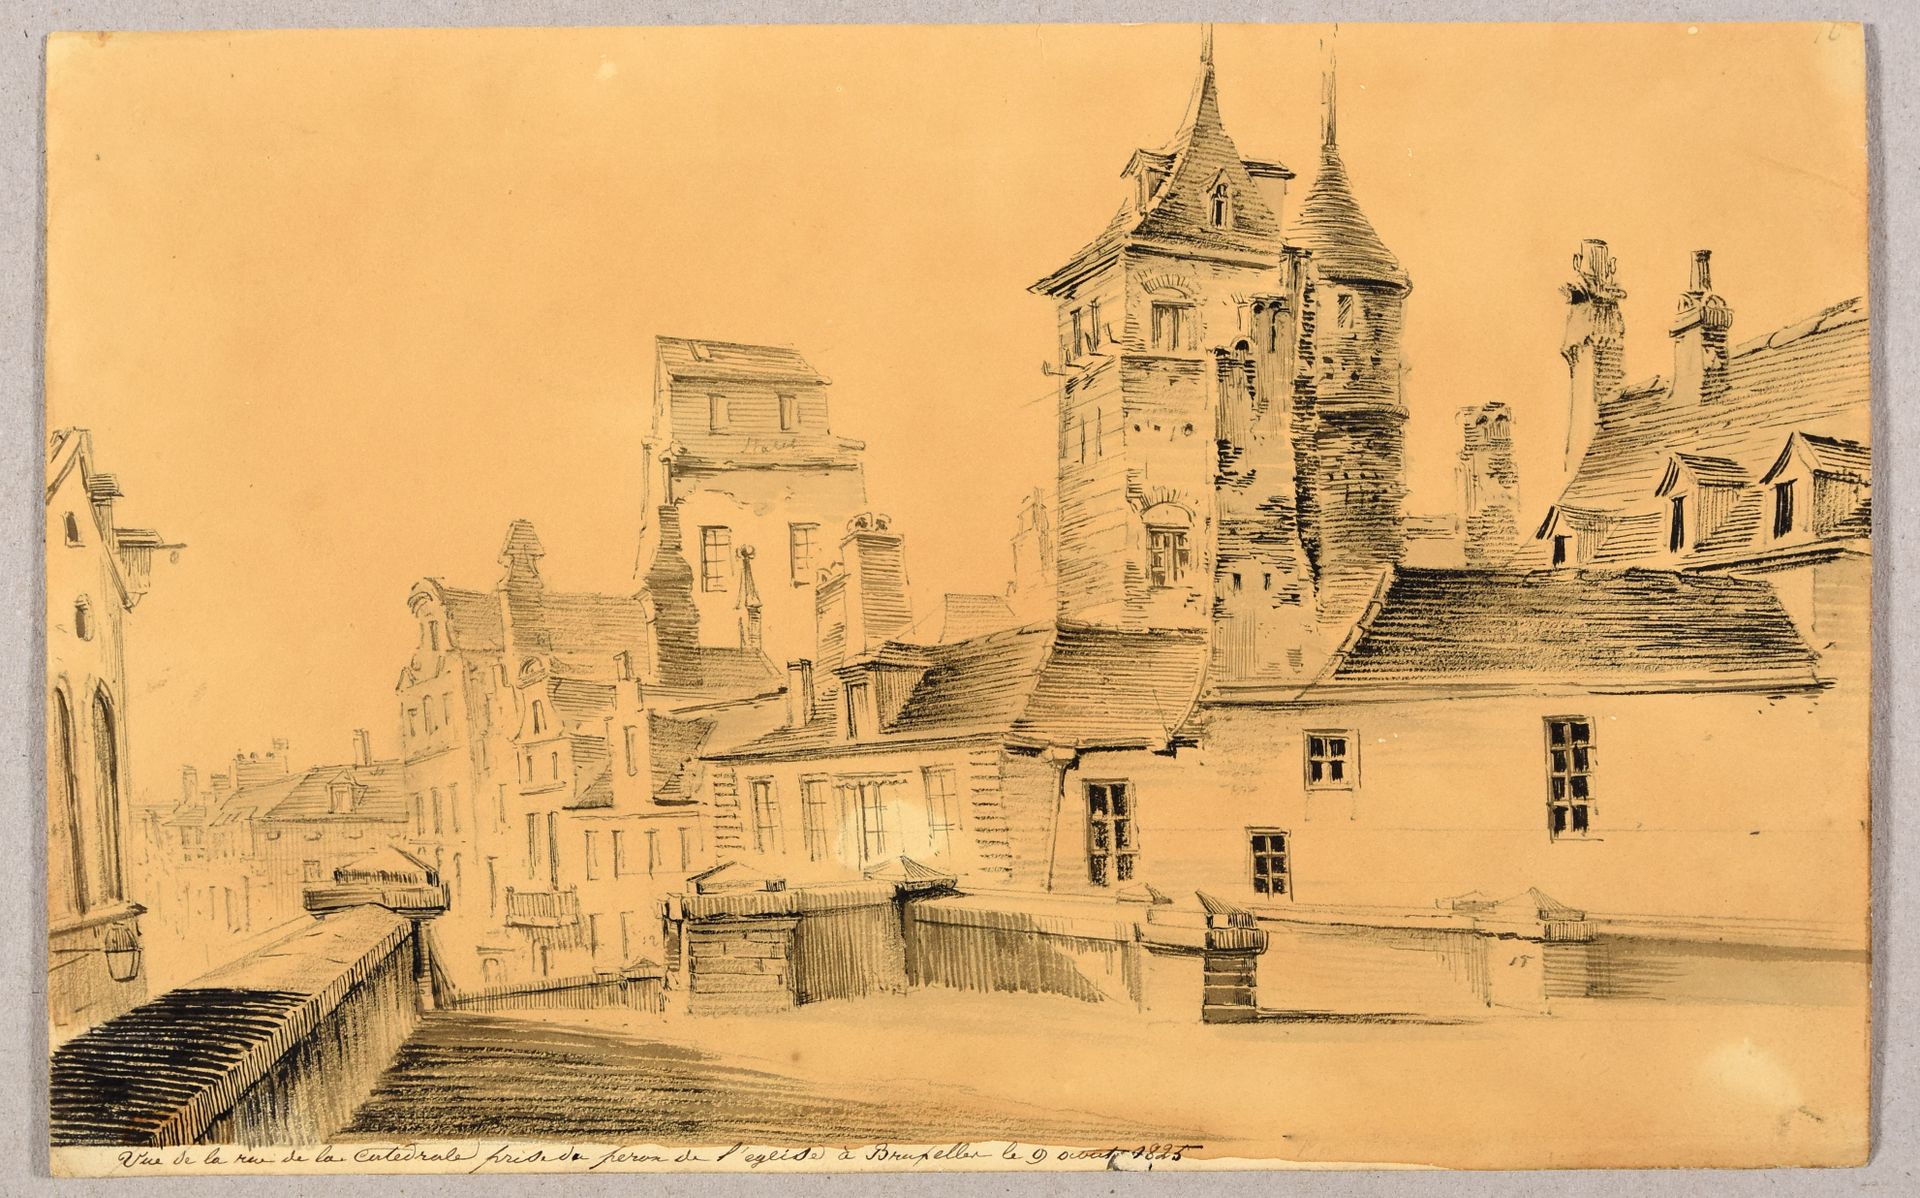 Null 布鲁塞尔和列日的景色。1825年 2幅画，钢笔和黑墨水，灰色水洗，铅笔的痕迹，20,5 x 32,5厘米，天鹅绒纸，无签名（布鲁塞尔的纸张略带色调）。&hellip;